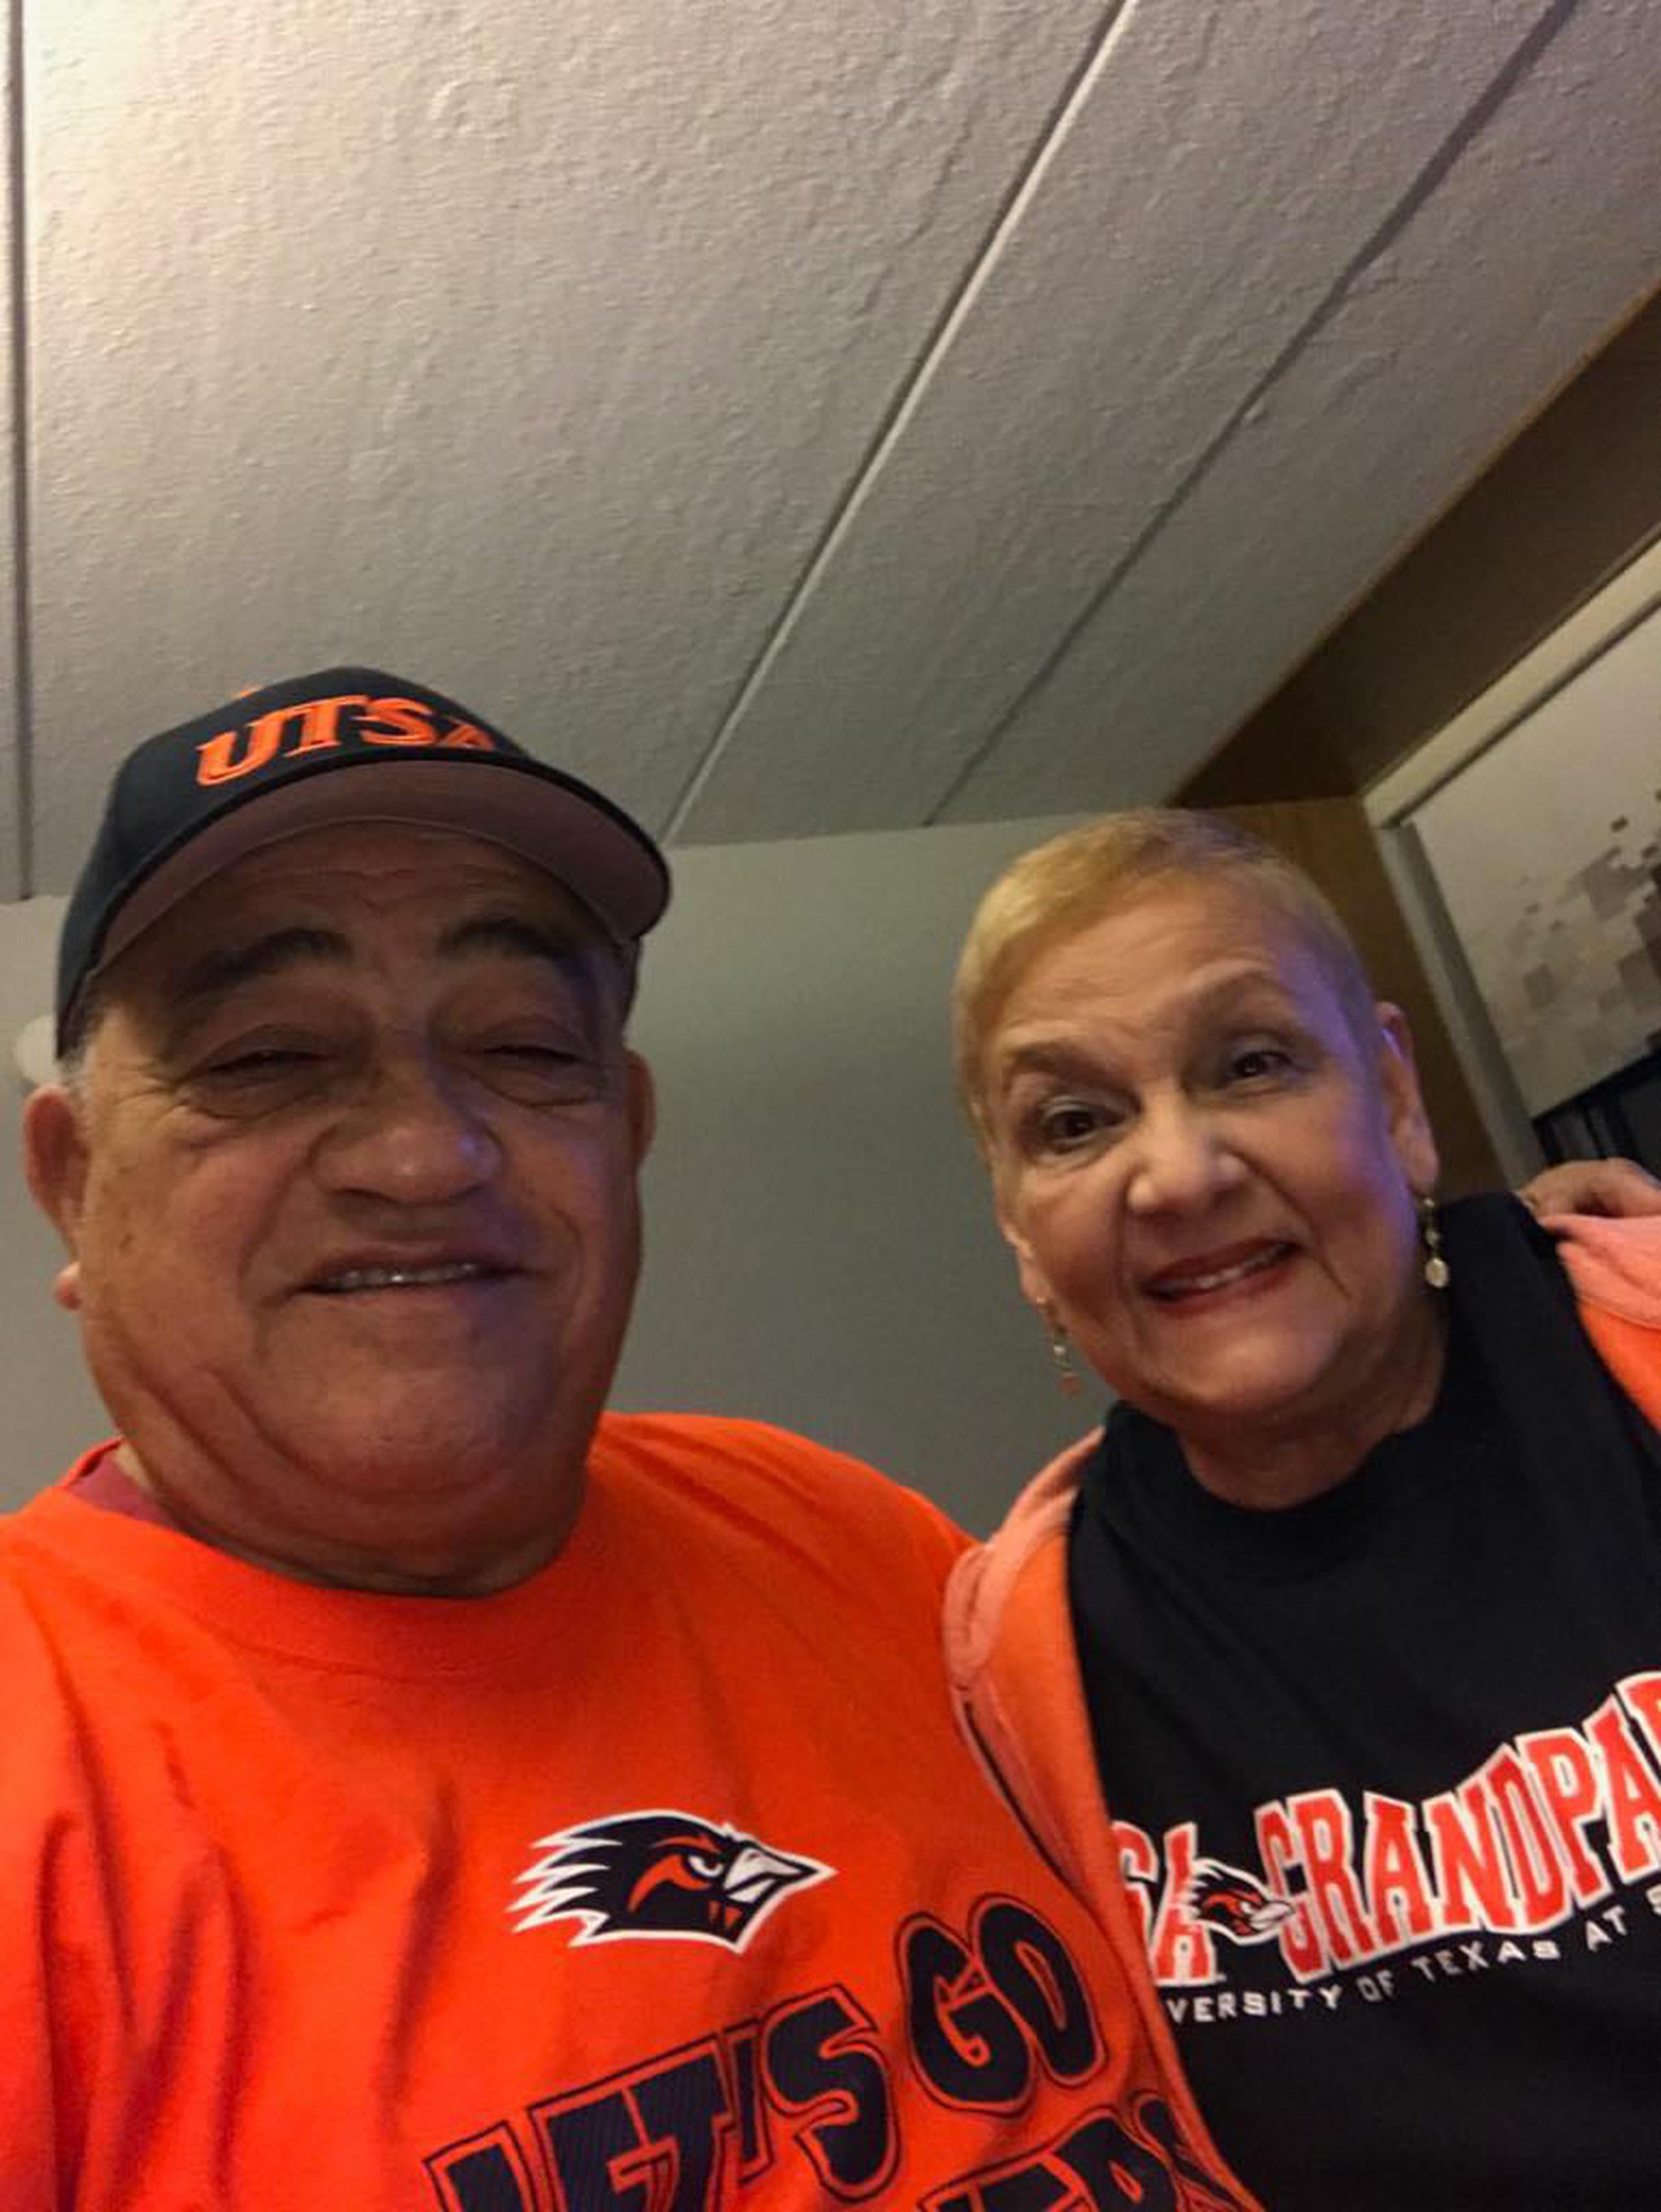 Tanto Flor Meléndez como su esposa Nilda Barrios resultaron infectados con COVID-19. Ella está en cuarentena en su casa y su esposo podría salir del hospital en los próximos días.